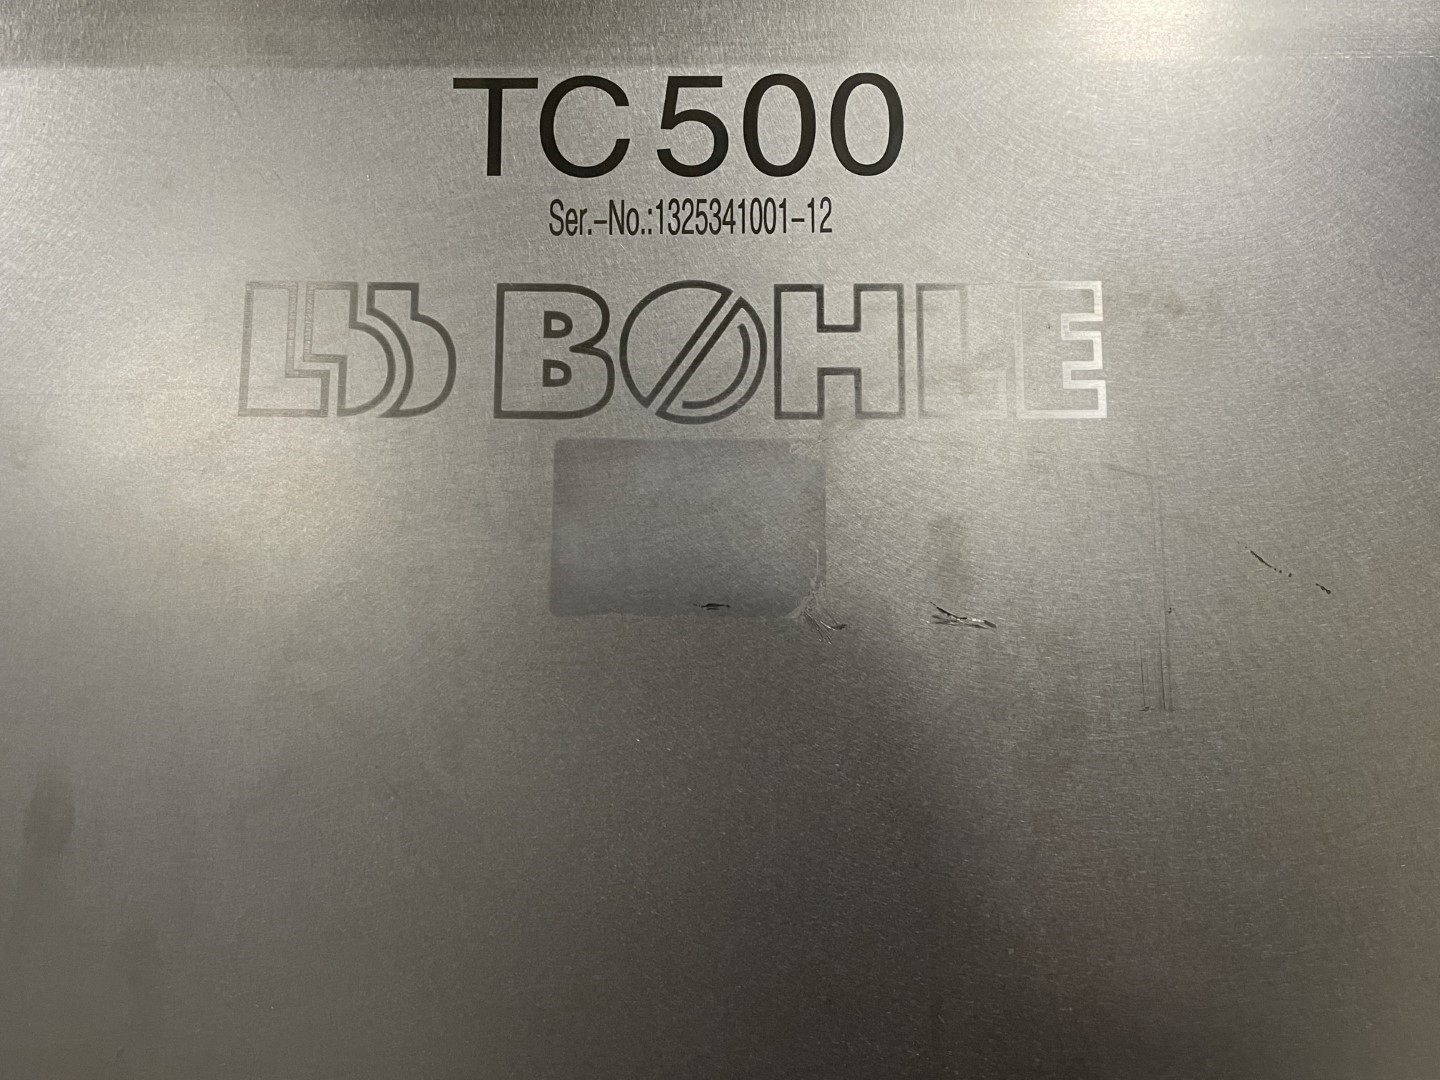 500 Liter LB Bohle Bin, S/S, Model TC 500